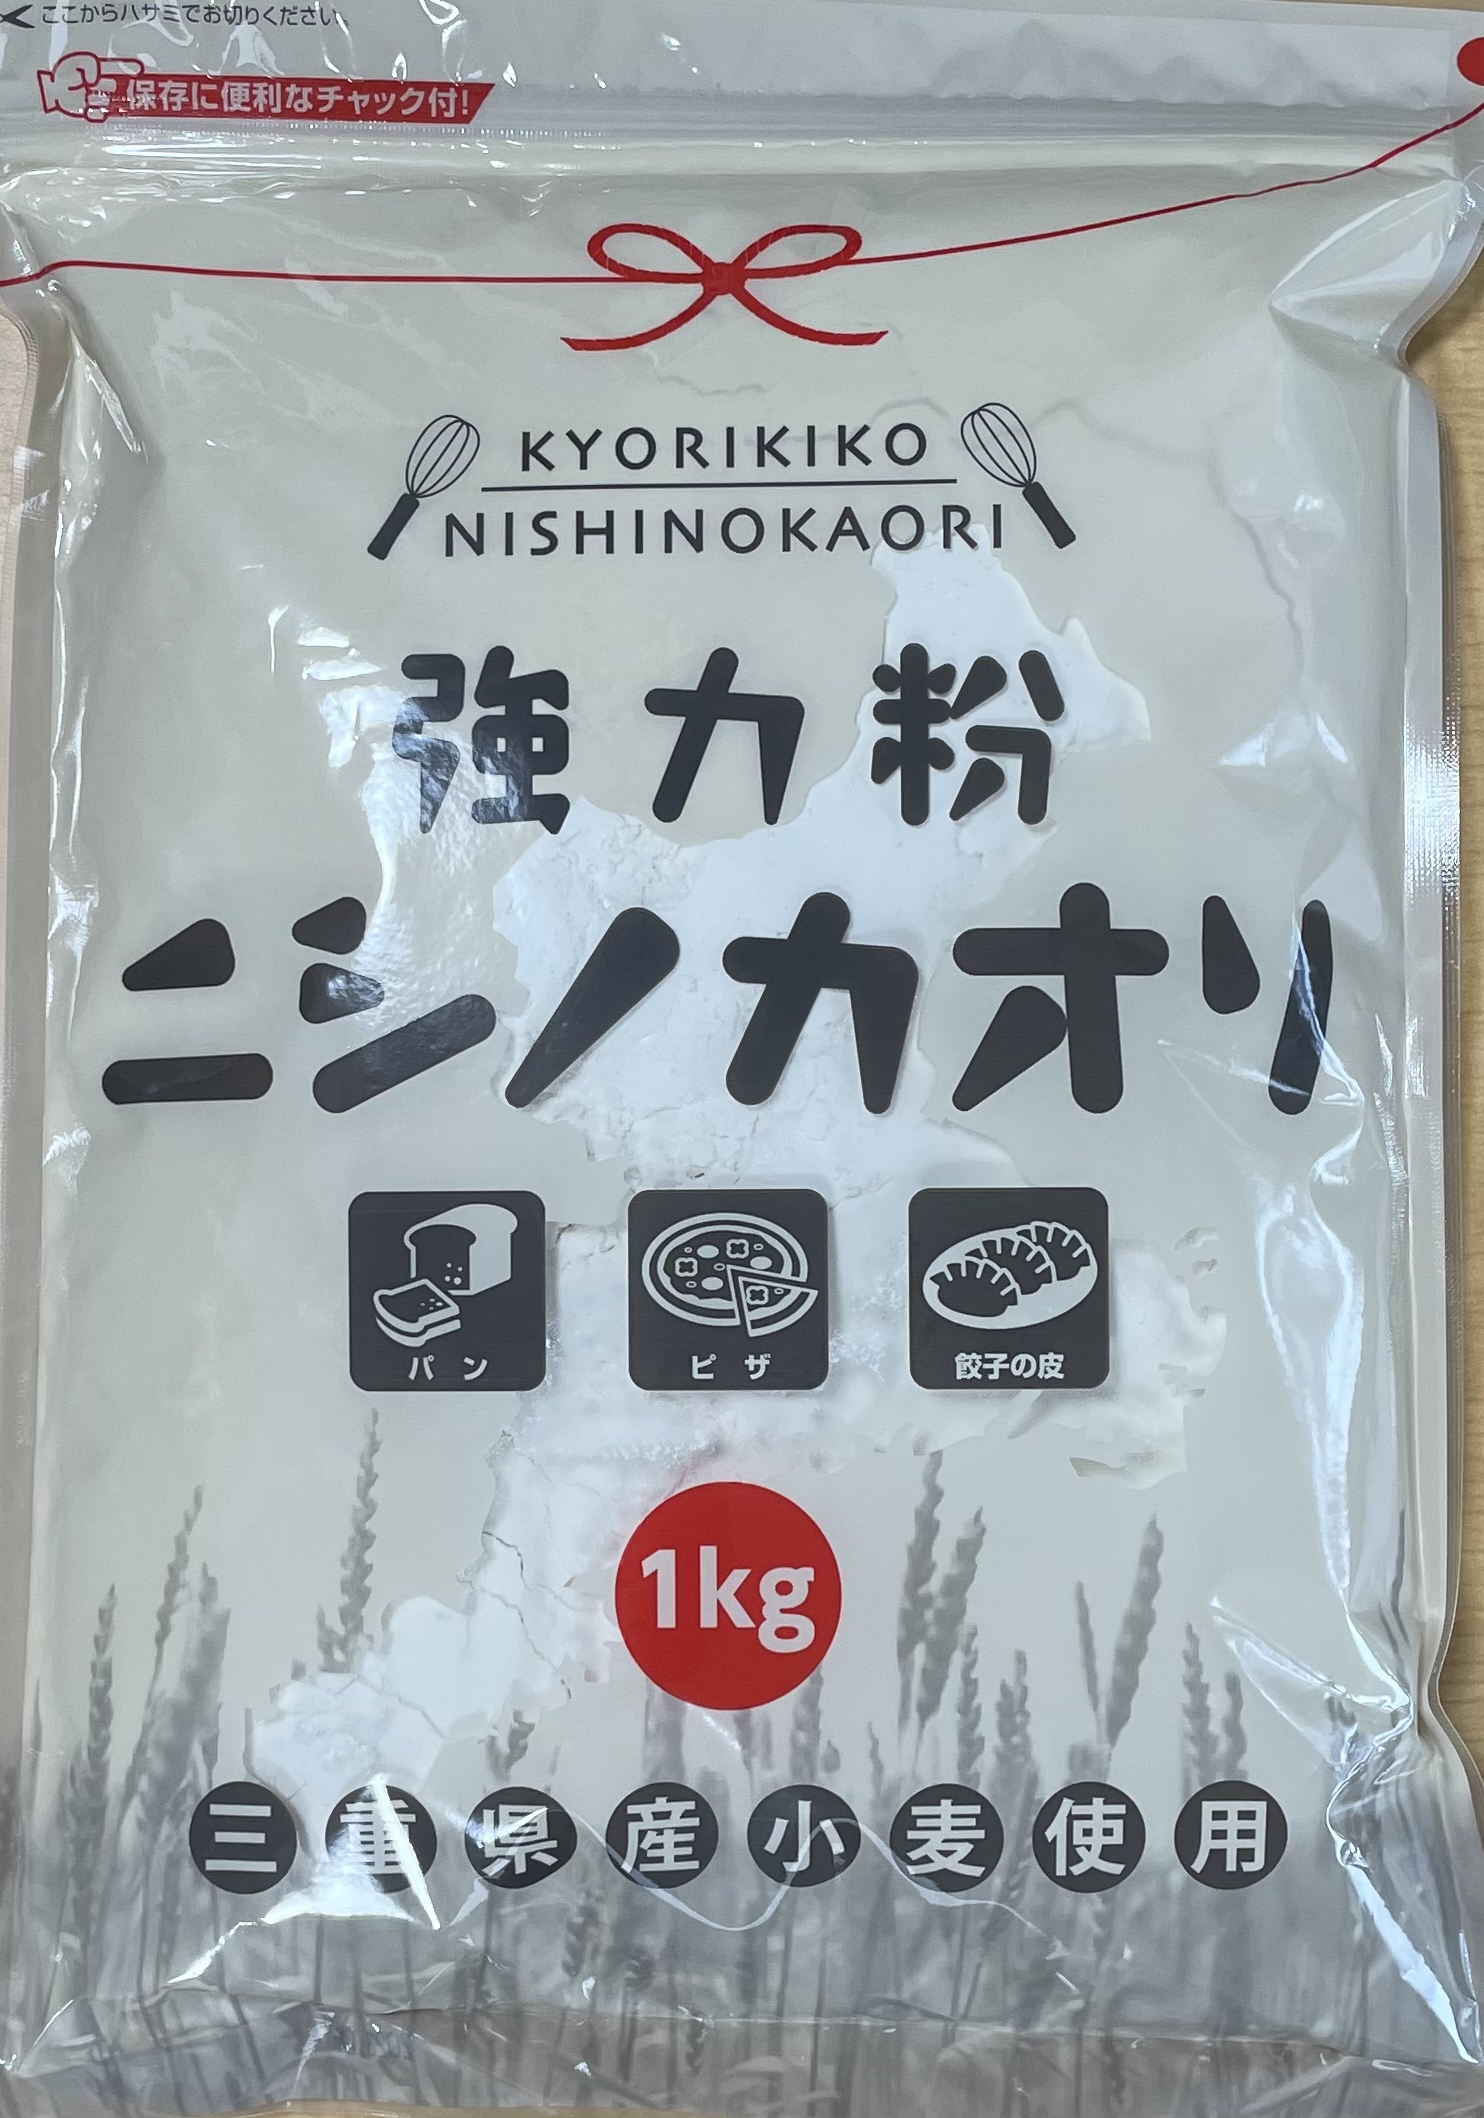 ニシノカオリ 1kg 15袋入り チャック袋【平和製粉】【送料無料】